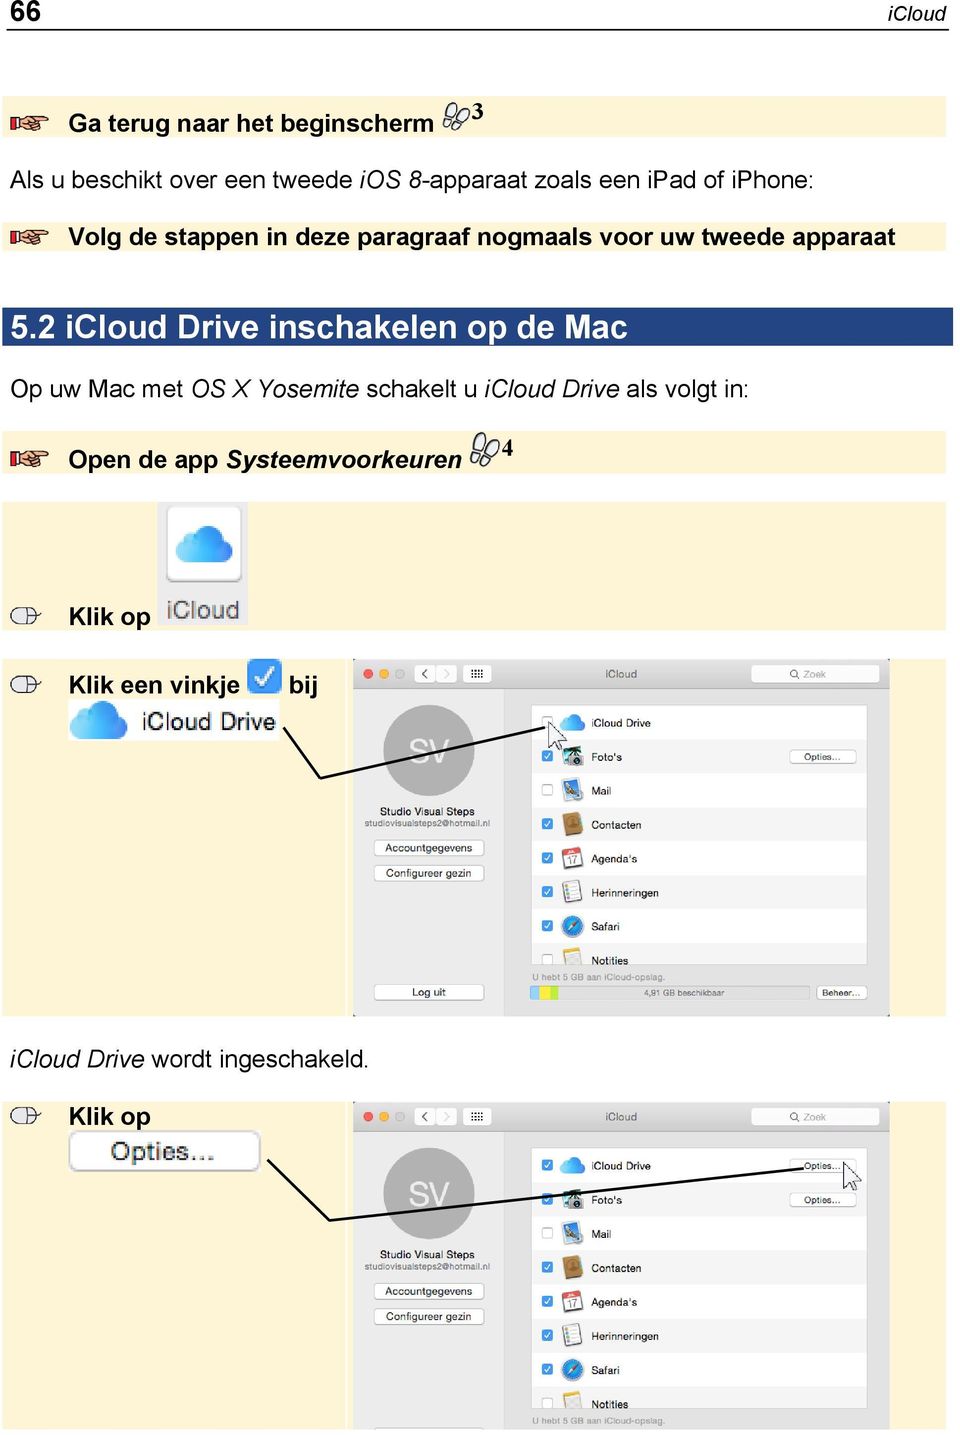 2 icloud Drive inschakelen op de Mac Op uw Mac met OS X Yosemite schakelt u icloud Drive als